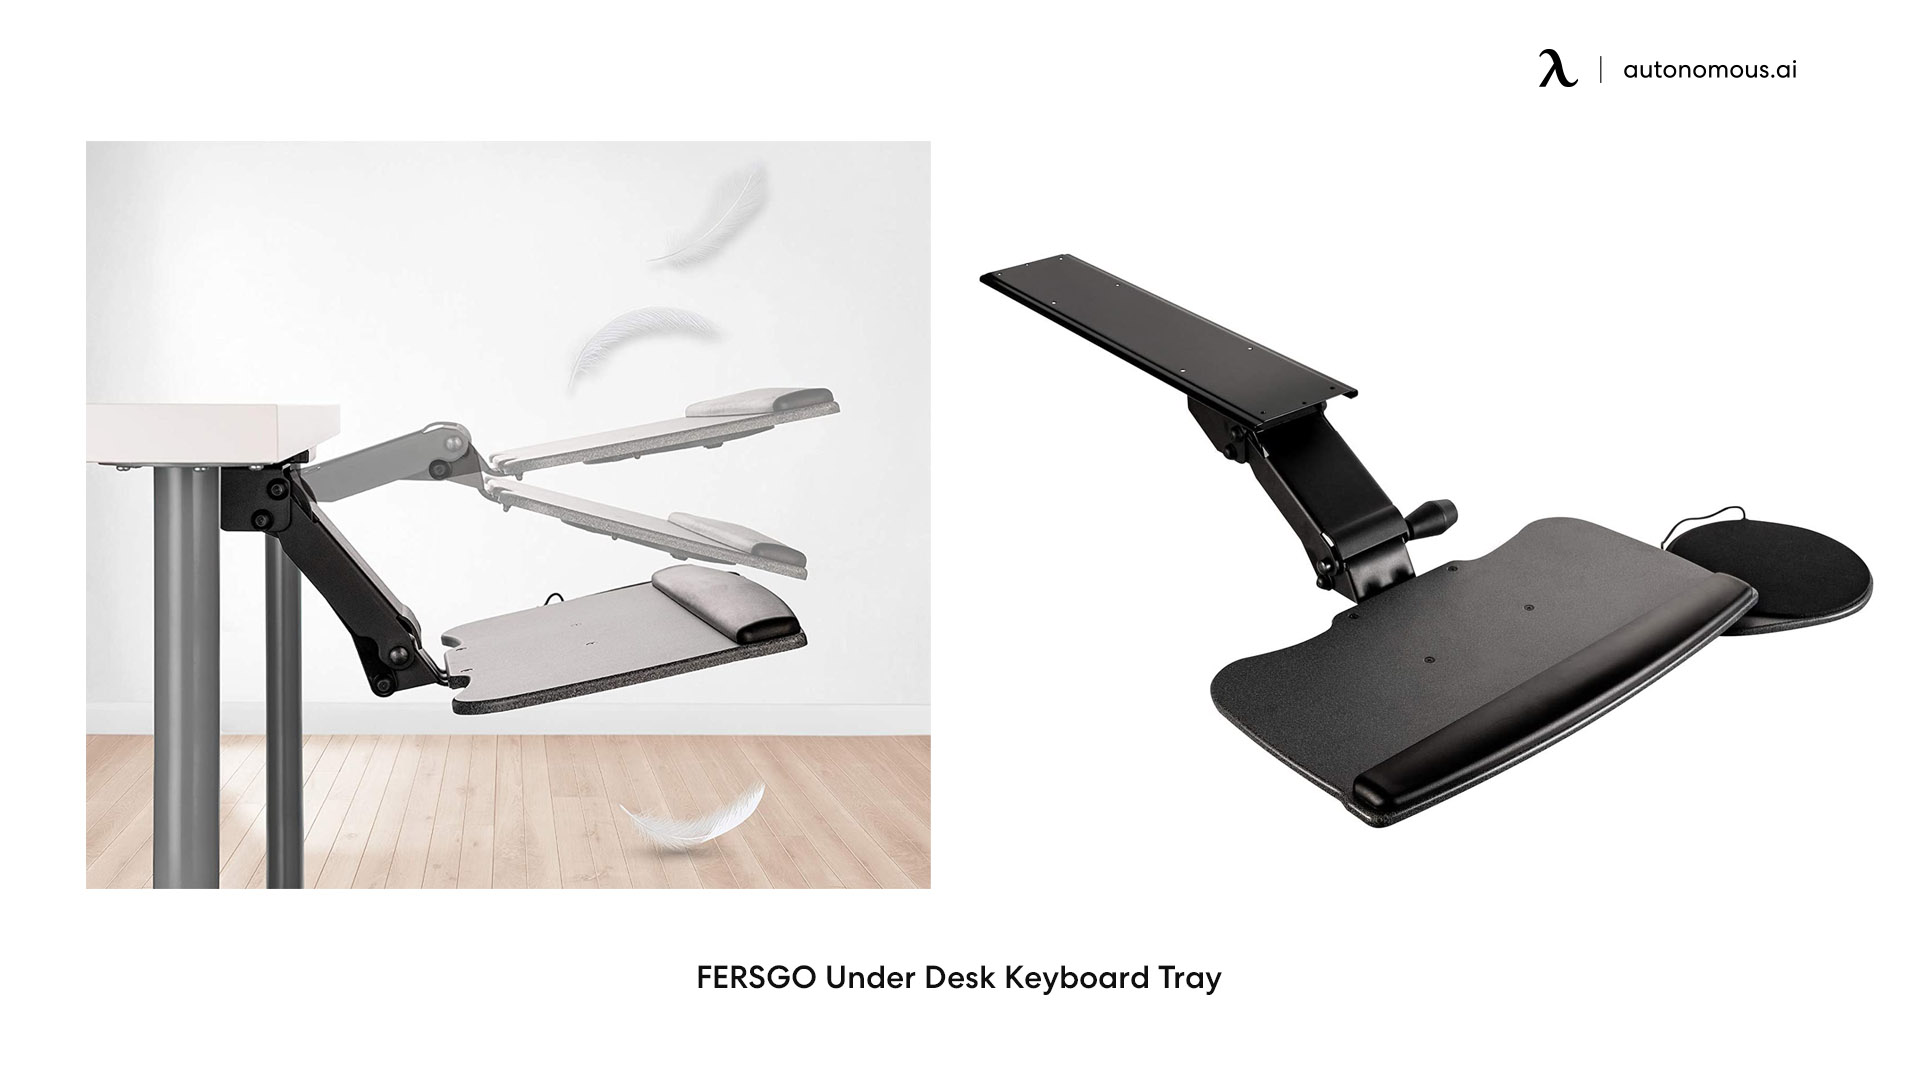 FERSGO under desk keyboard tray